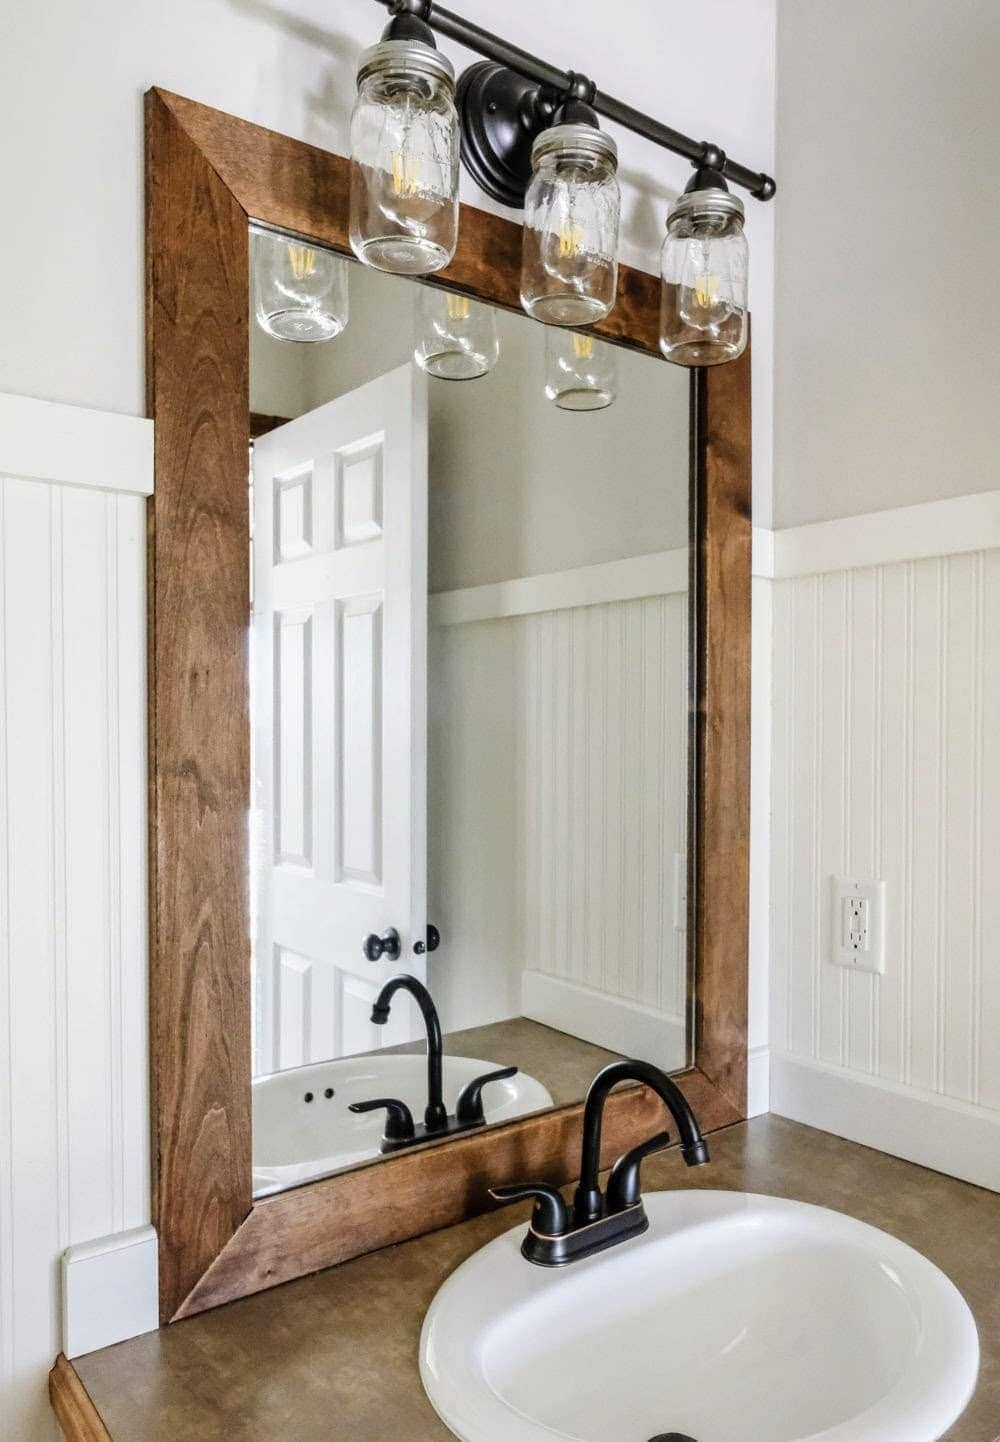 wood frame bathroom mirror